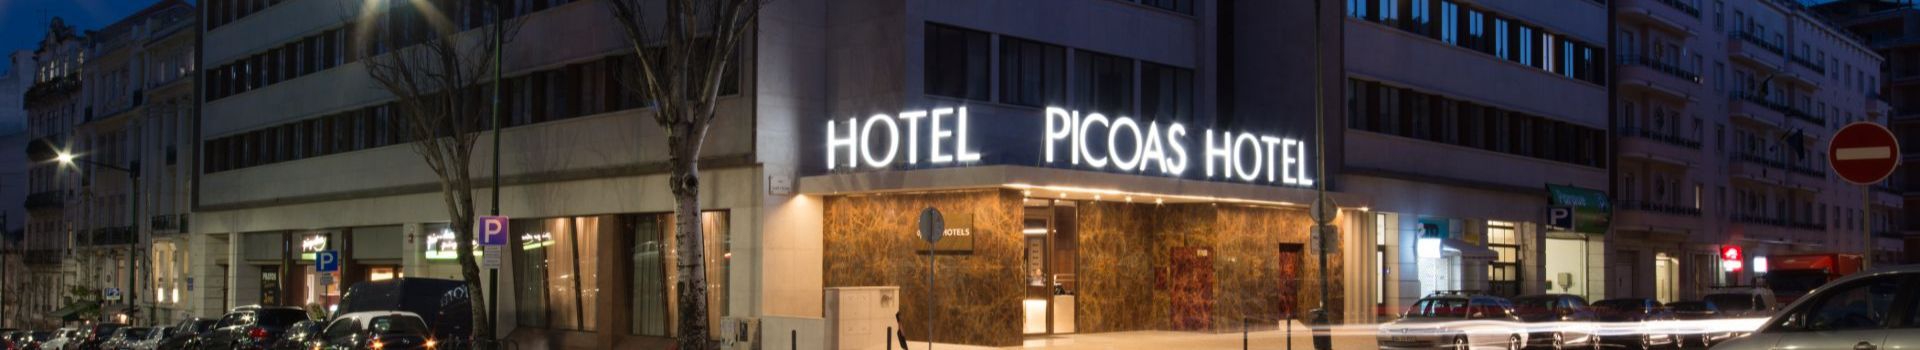 Galeria VIP Executive Picoas Hotel Lisboa